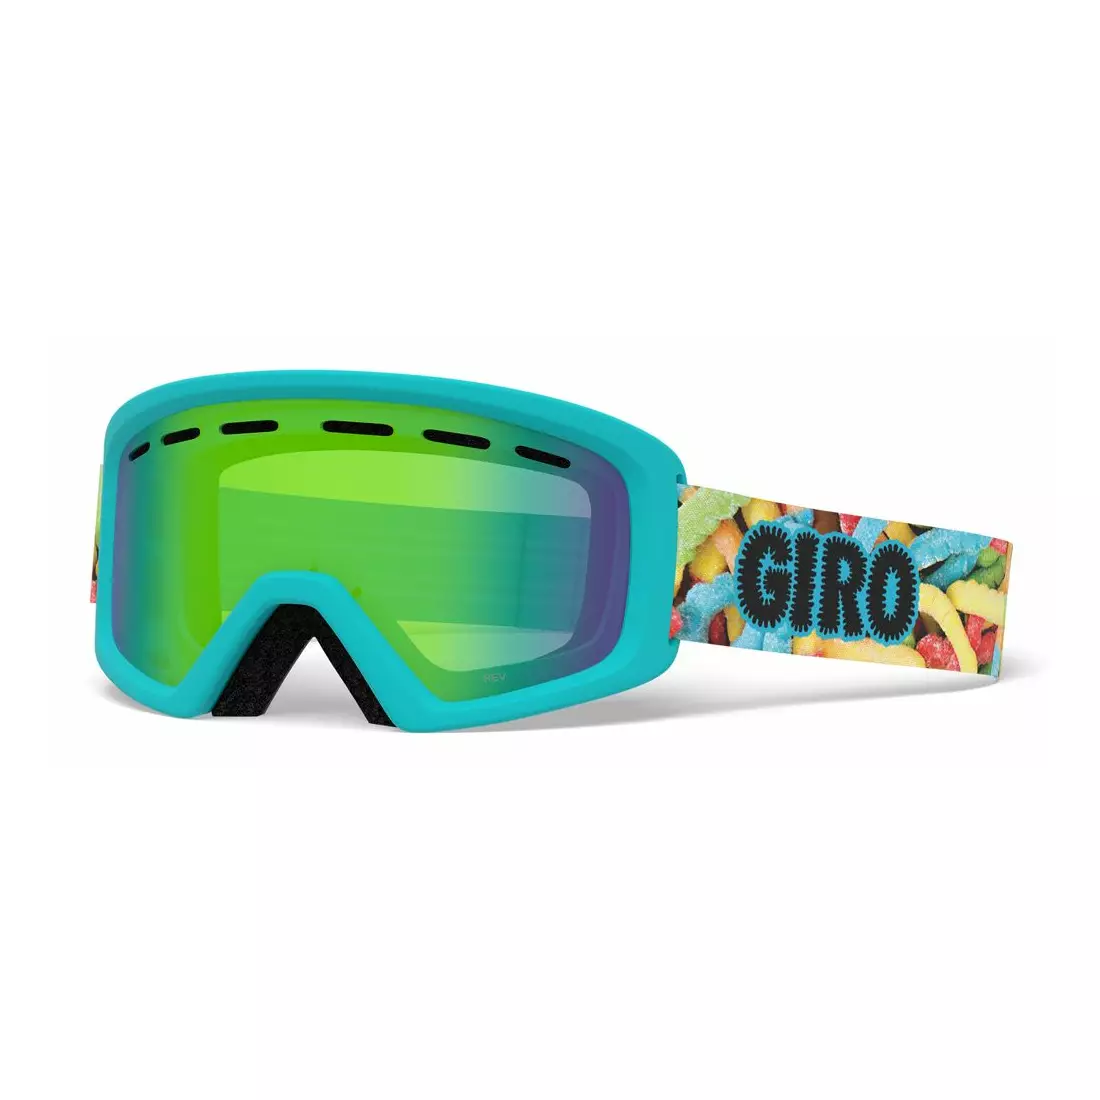 Juniorské lyžiarske / snowboardové okuliare REV SWEET TOOTH GR-7105716